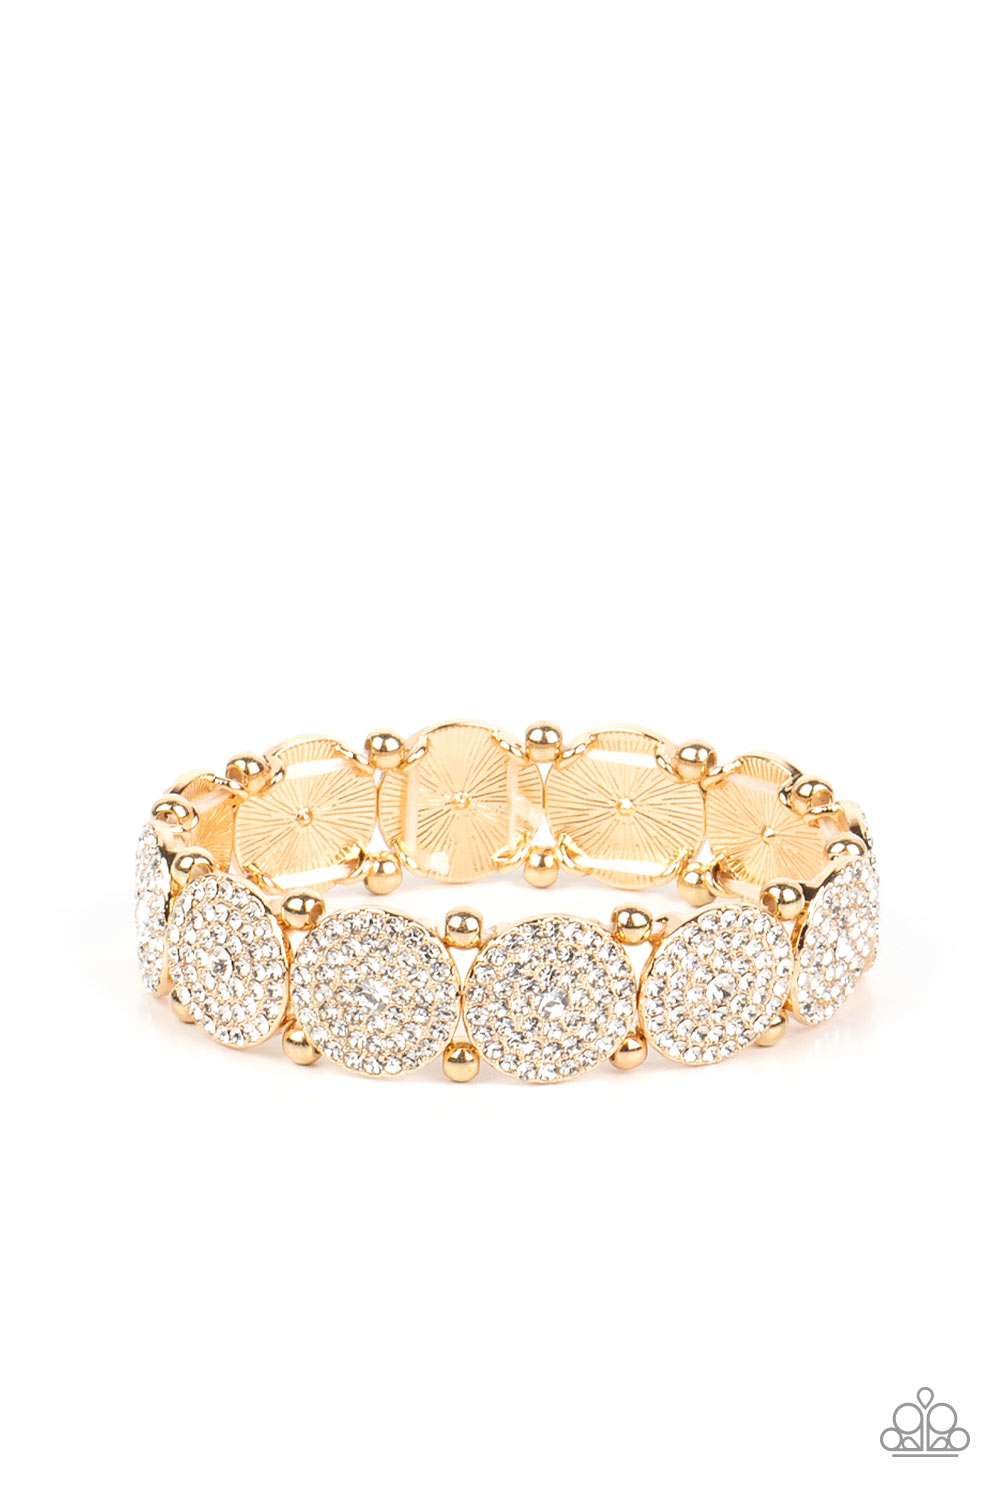 Palace Intrigue - Gold Bracelet